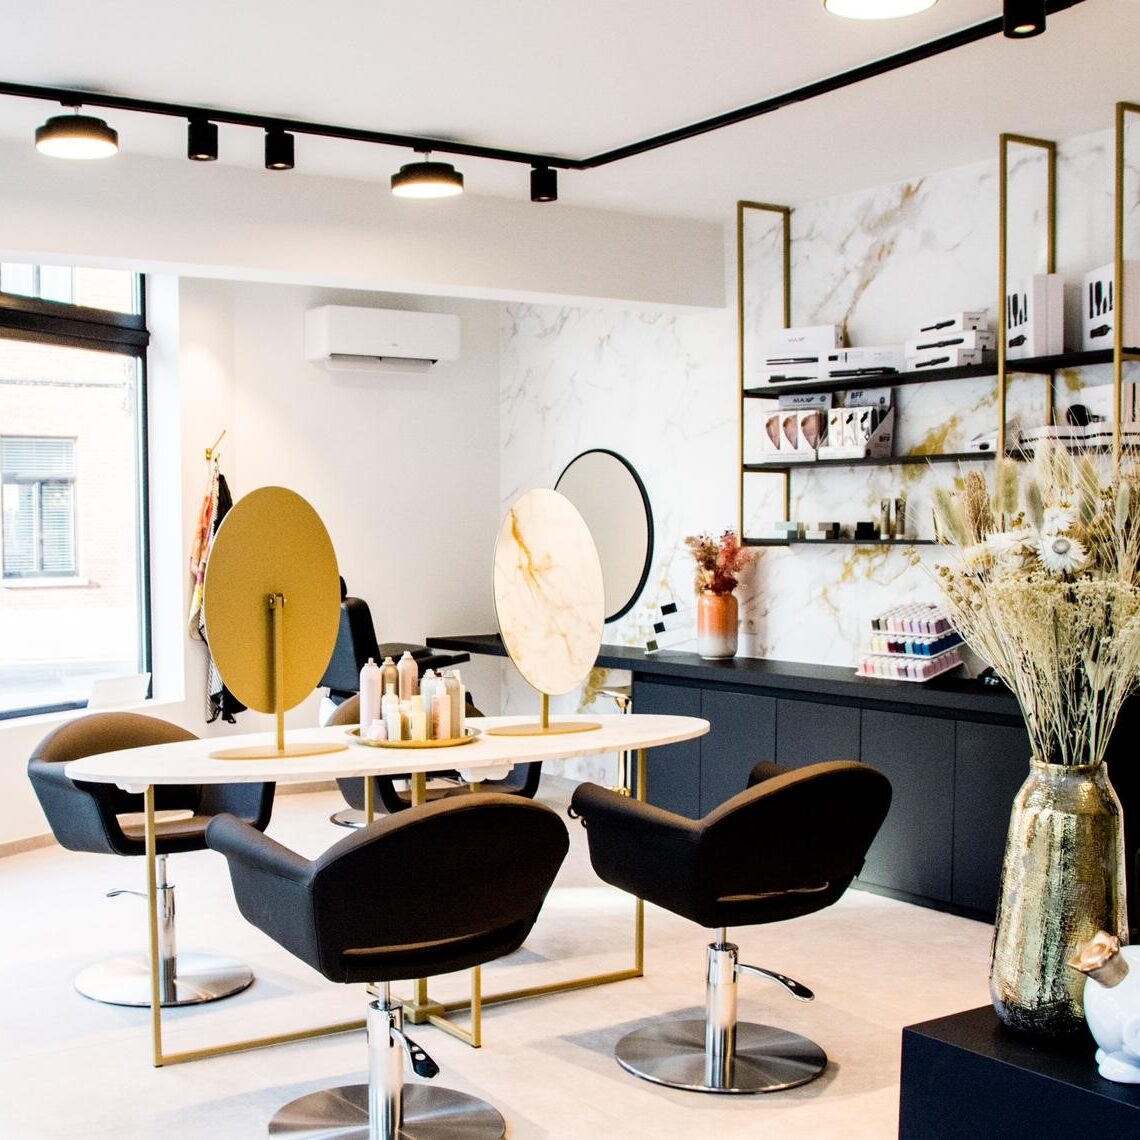 Cenzo par Liza Lievens Aalter - aménagement d'un salon de coiffure par PAC interiors